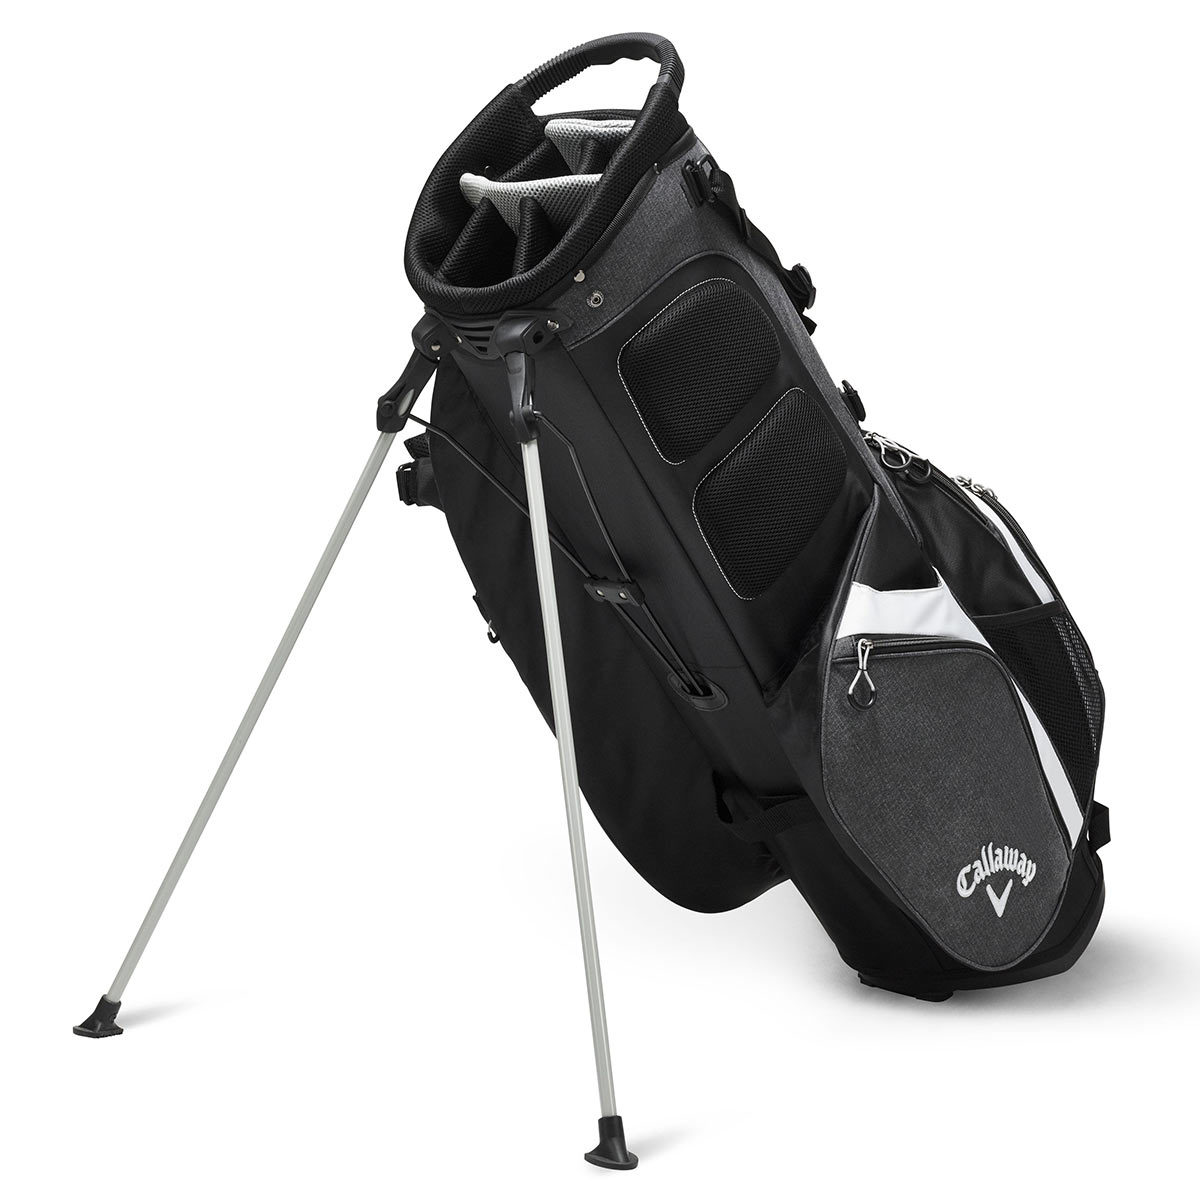 Callaway Premium Stand Bag in Black / Grey | Costco UK